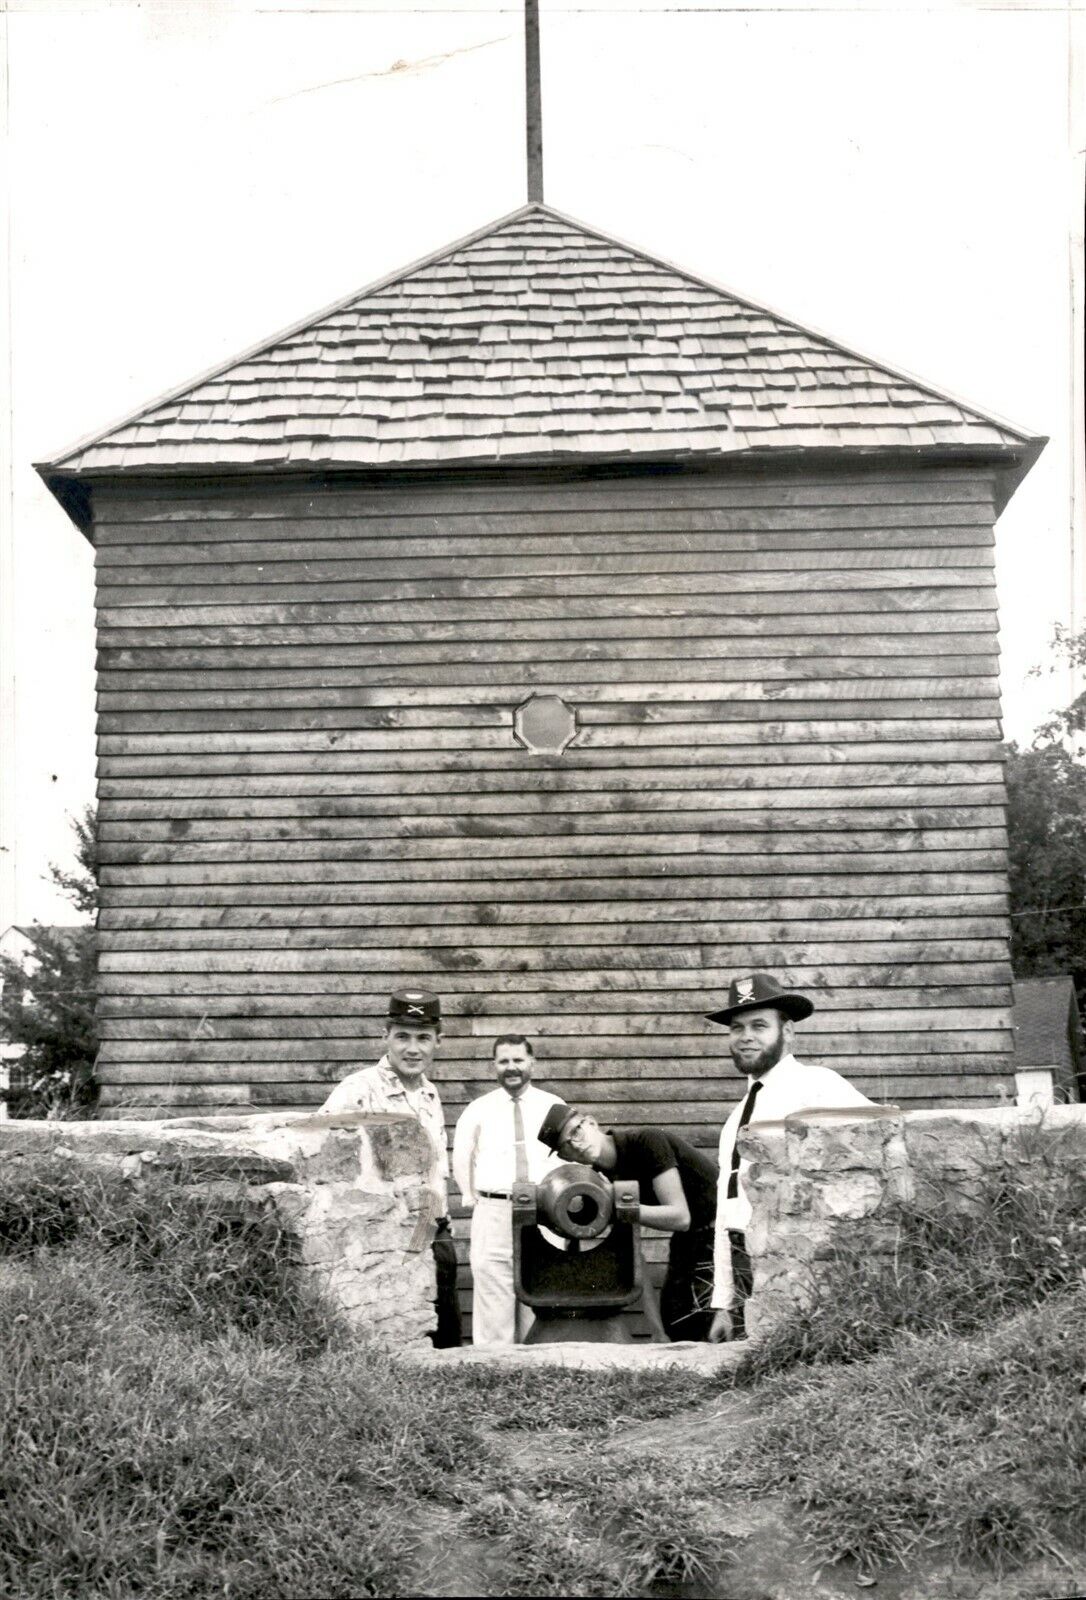 LG922 1959 Original Photo RESTORED BLOCKHOUSE Fort Blair Civil War Reenactment